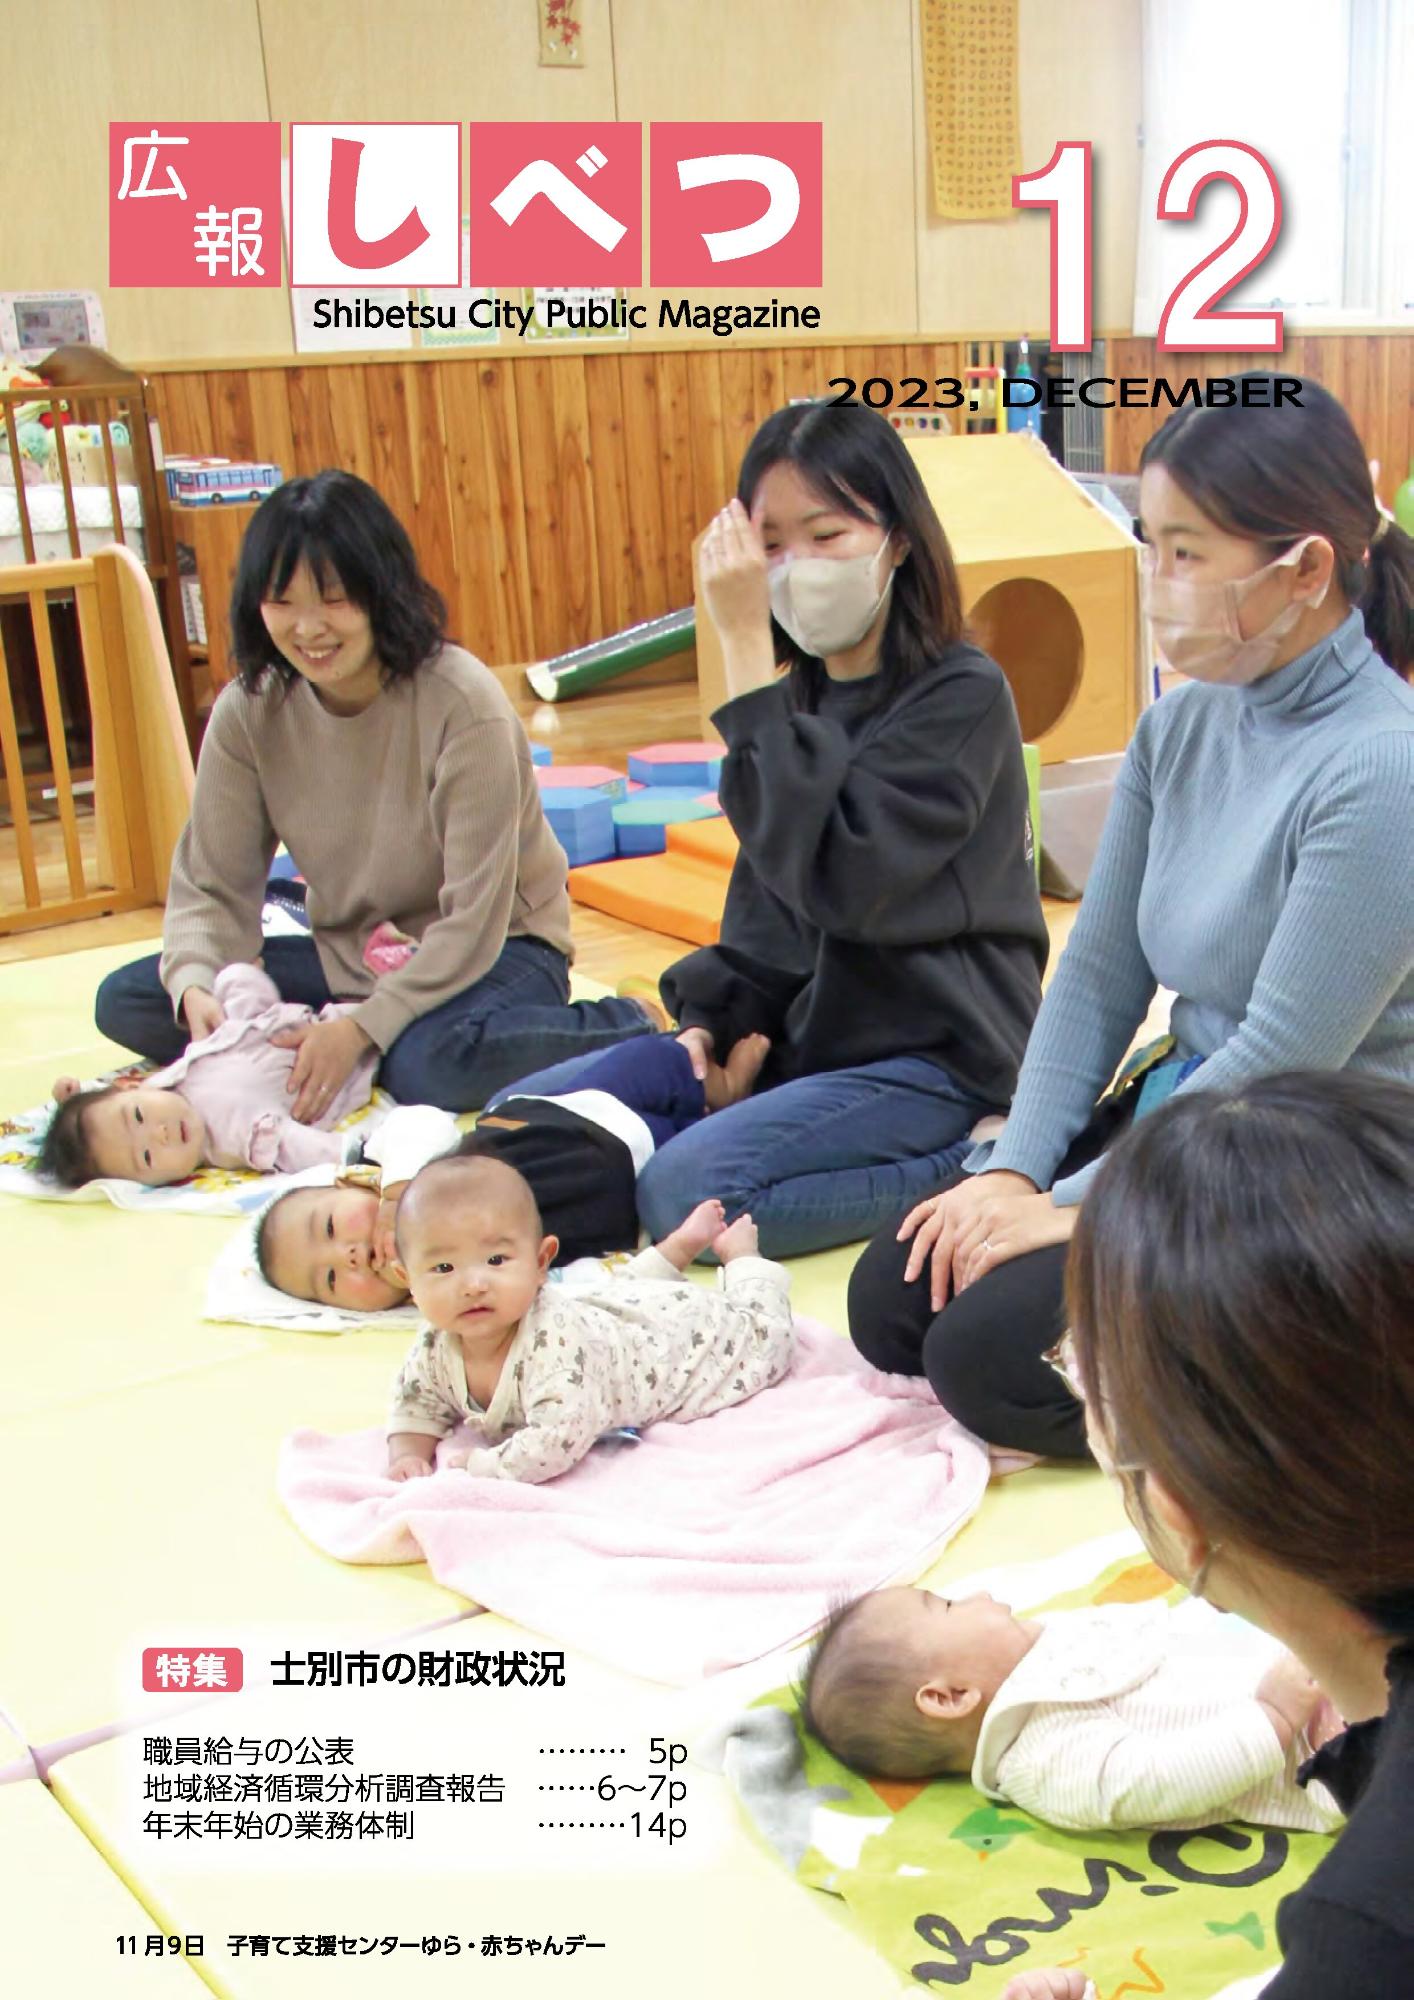 子育て支援センターに集まった4人の赤ちゃんと4人のお母さんの写真を用いた、広報しべつ12月号の表紙